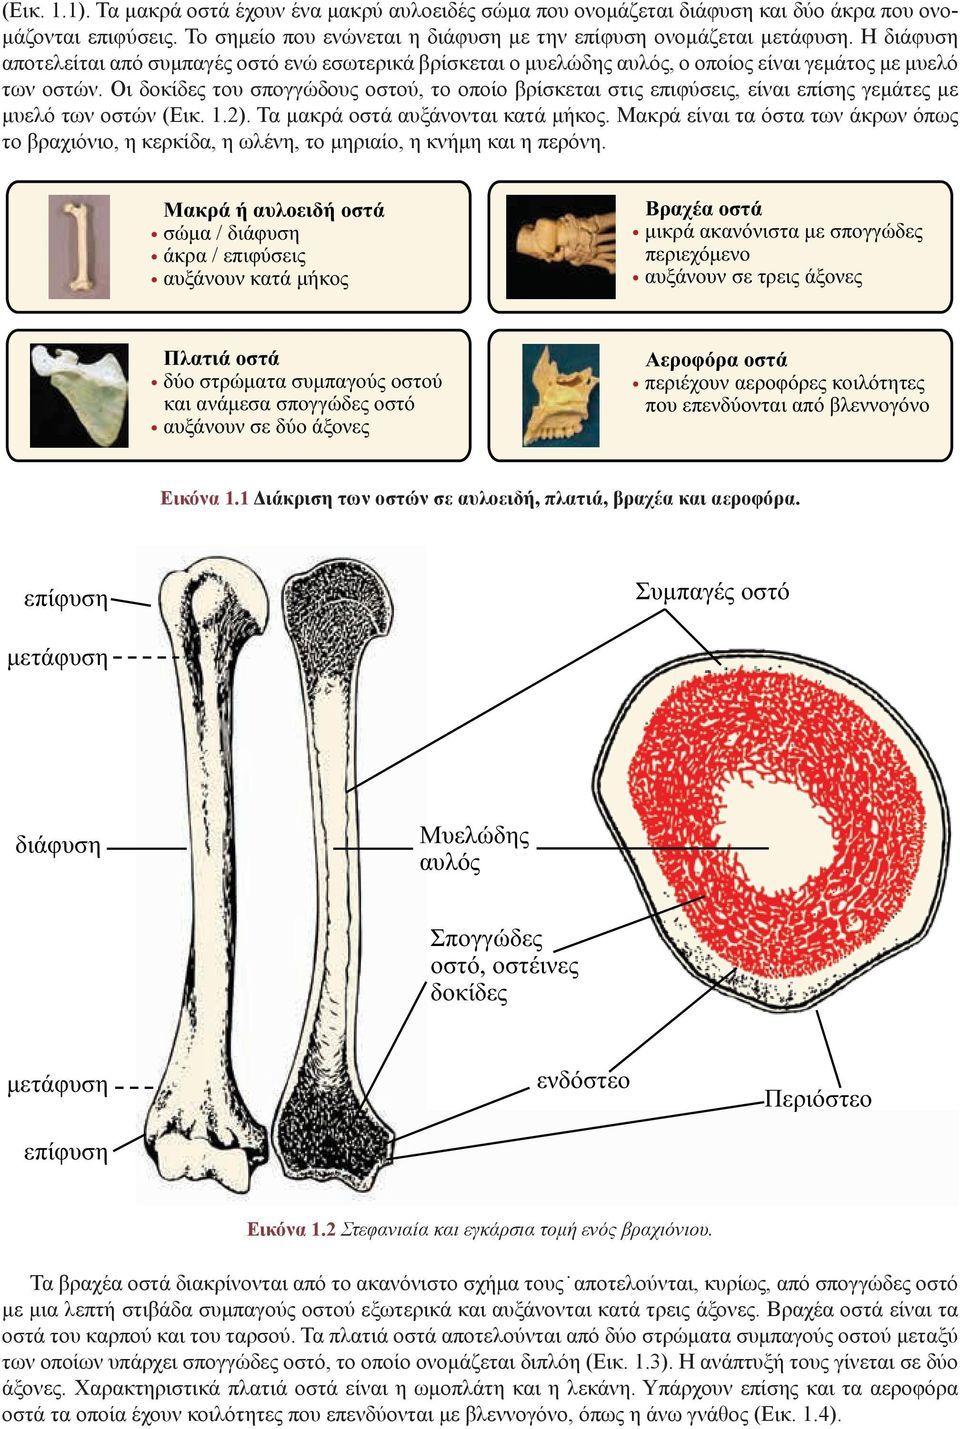 Ειδικά θέματα σκελετικής ανθρωπολογίας, ταφονομίας και βιοαρχαιολογίας -  PDF ΔΩΡΕΑΝ Λήψη